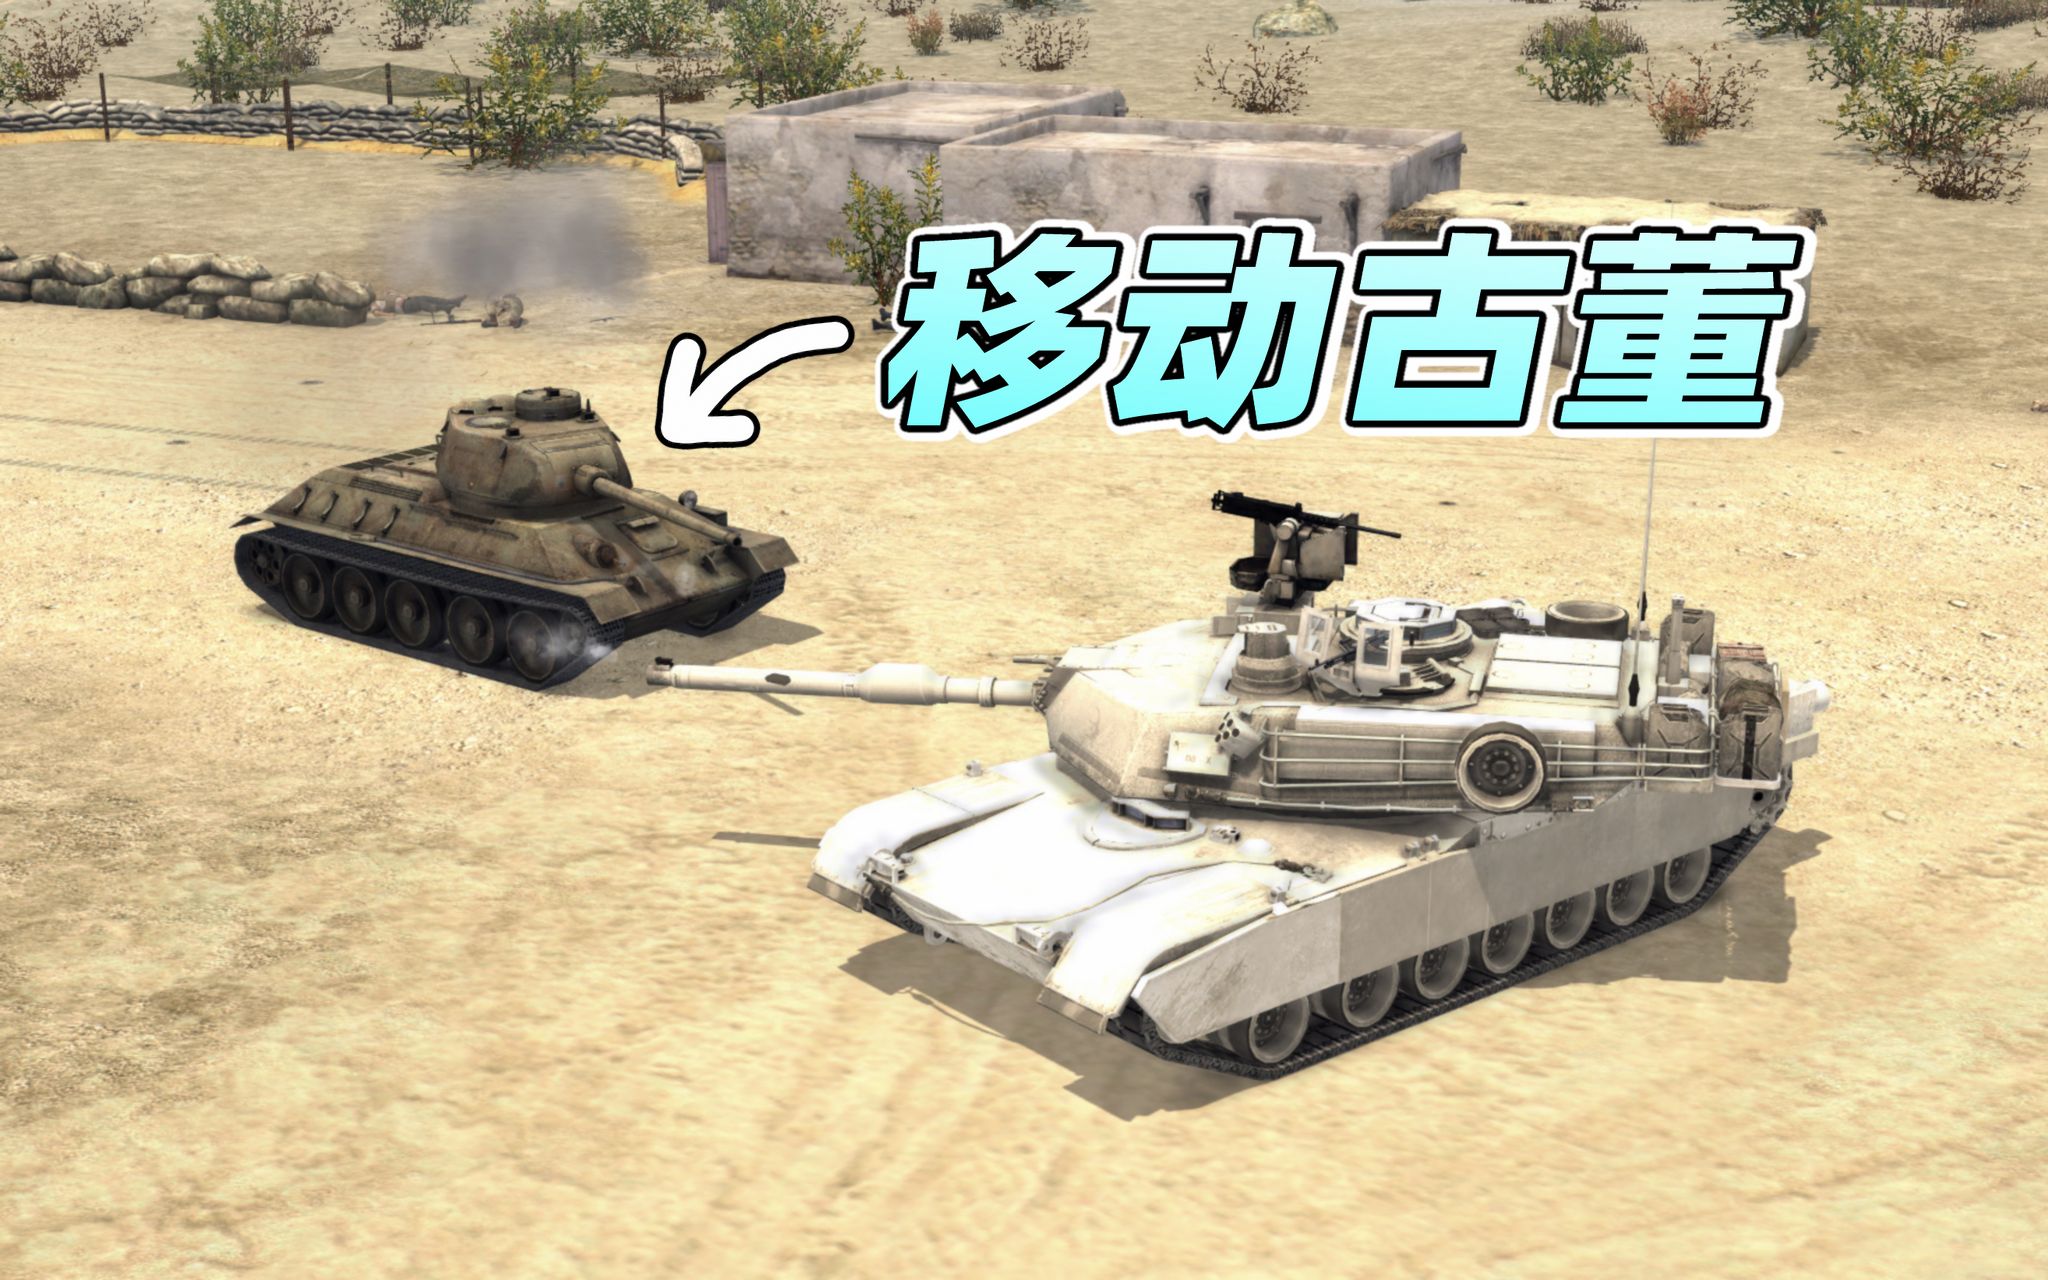 锈迹斑斑的T-34老爷车，能击败现代“陆战之王”吗？